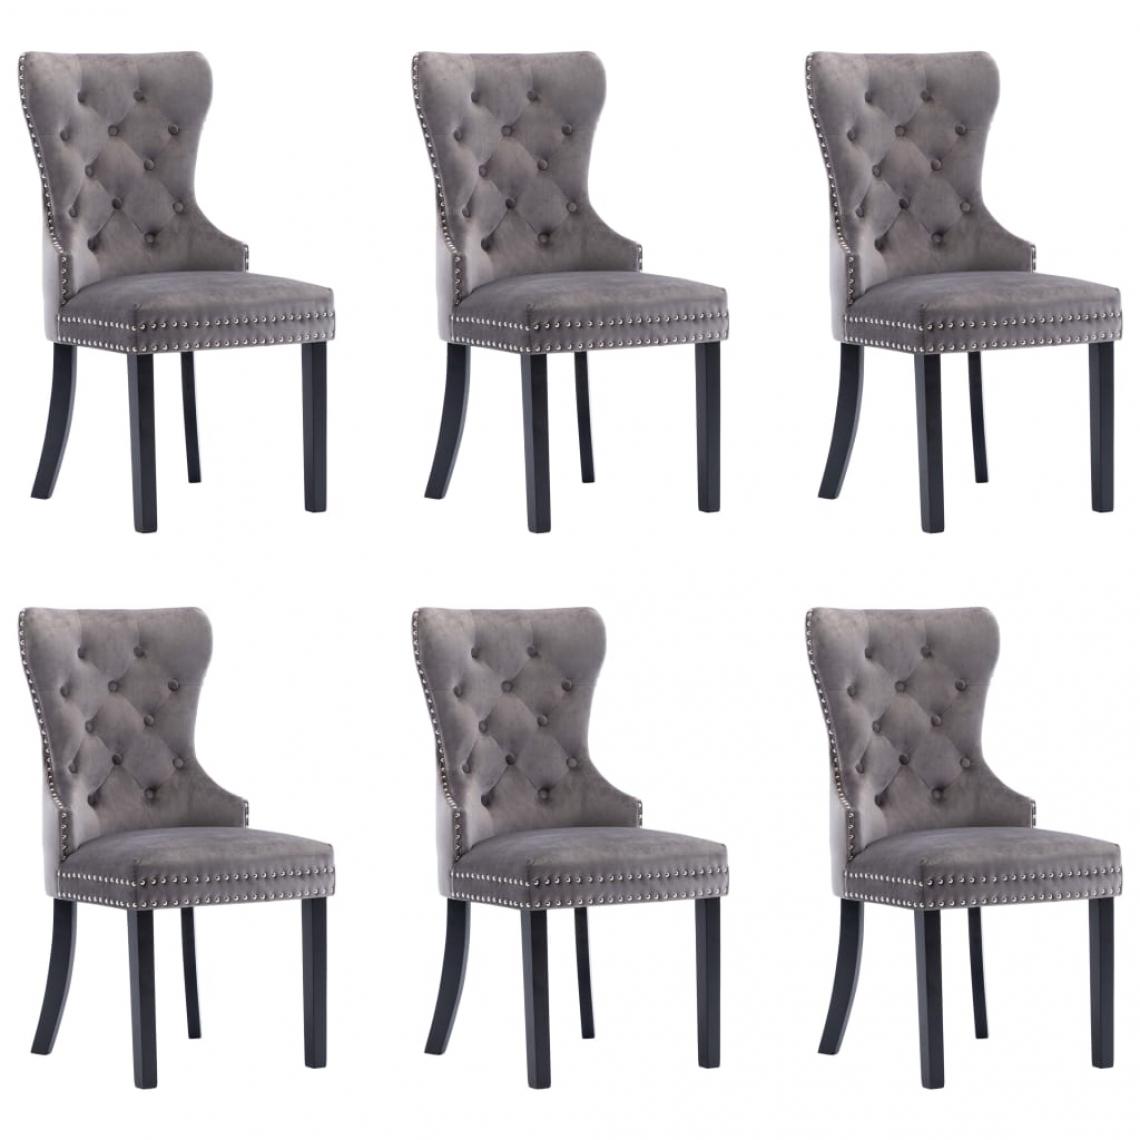 Decoshop26 - Lot de 6 chaises de salle à manger cuisine design classique velours gris CDS022511 - Chaises